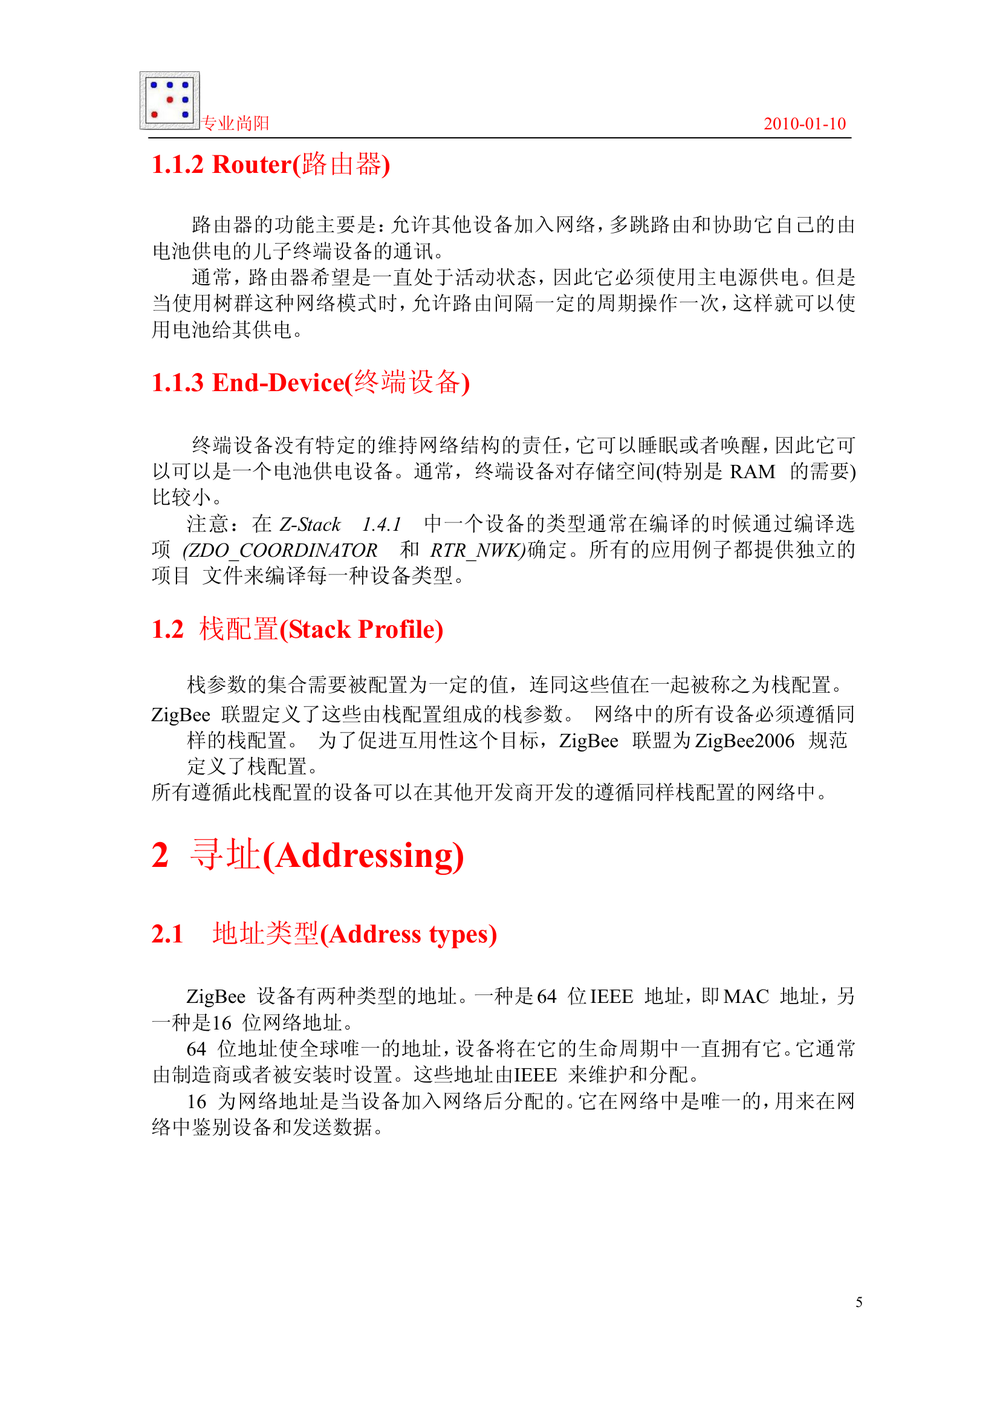 ZigBee 2006协议栈_开发指导手册_专业尚阳.PDF-第5页.png